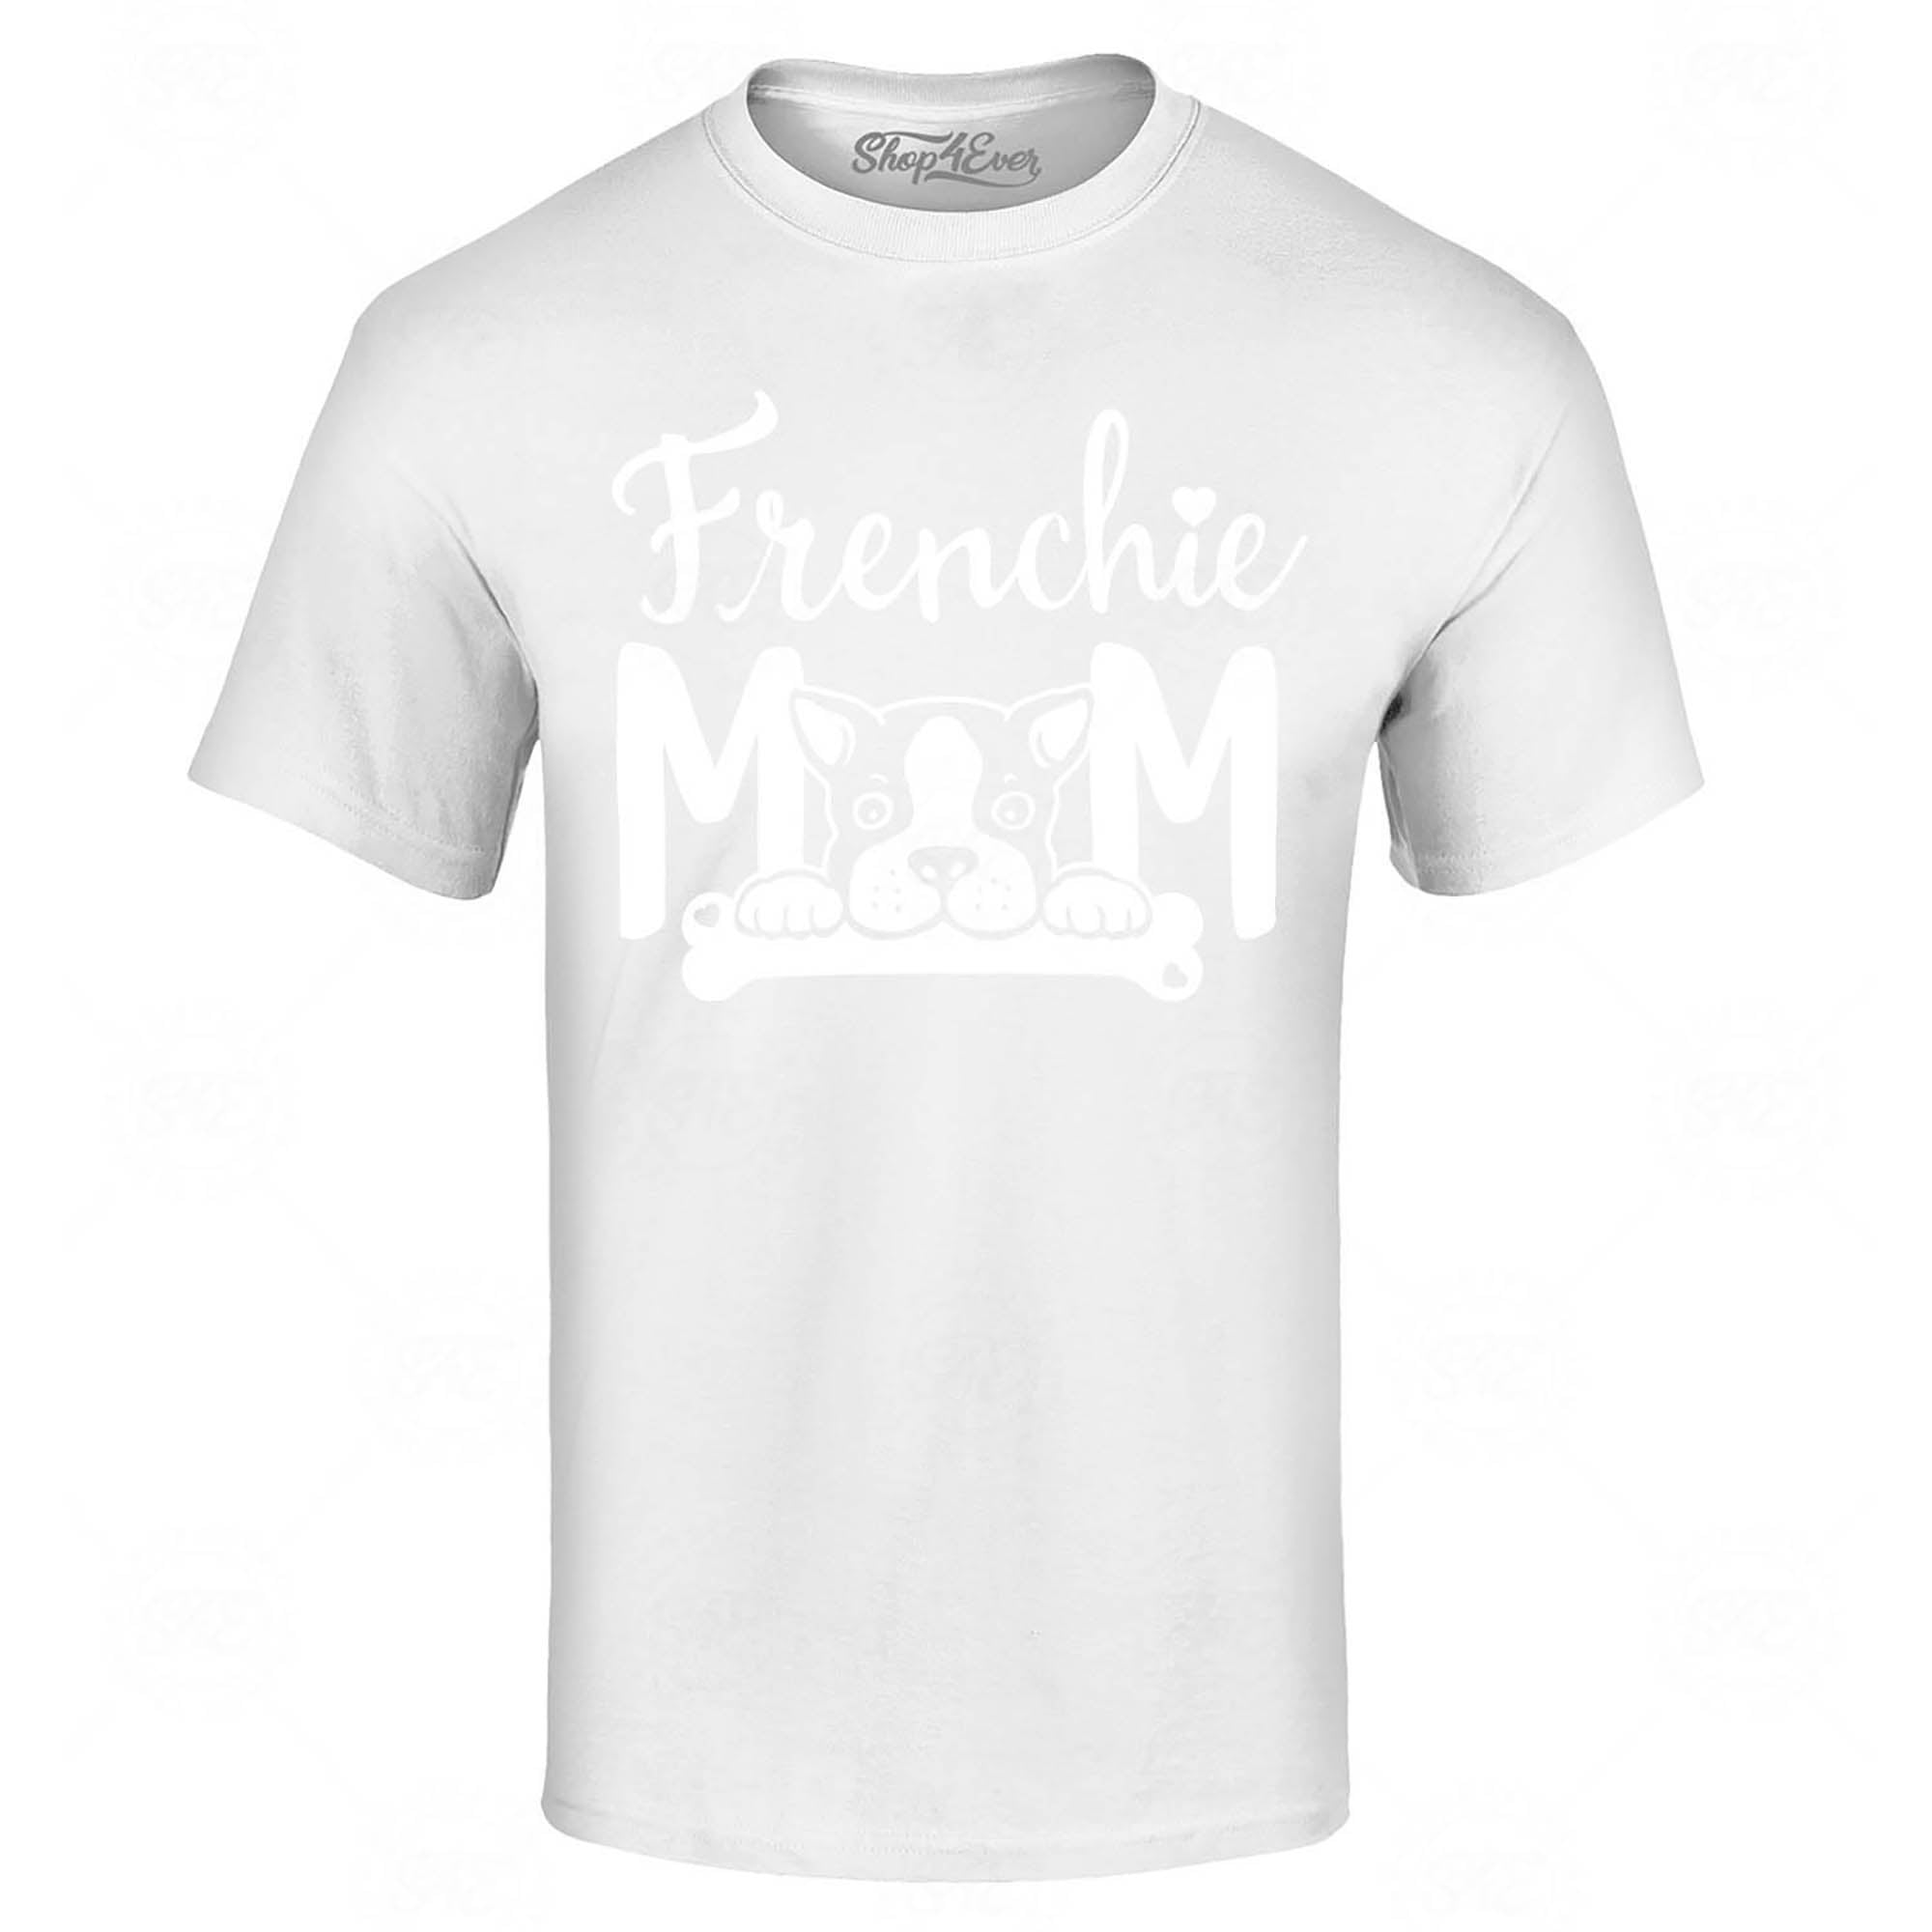 Frenchie Mom T-Shirt